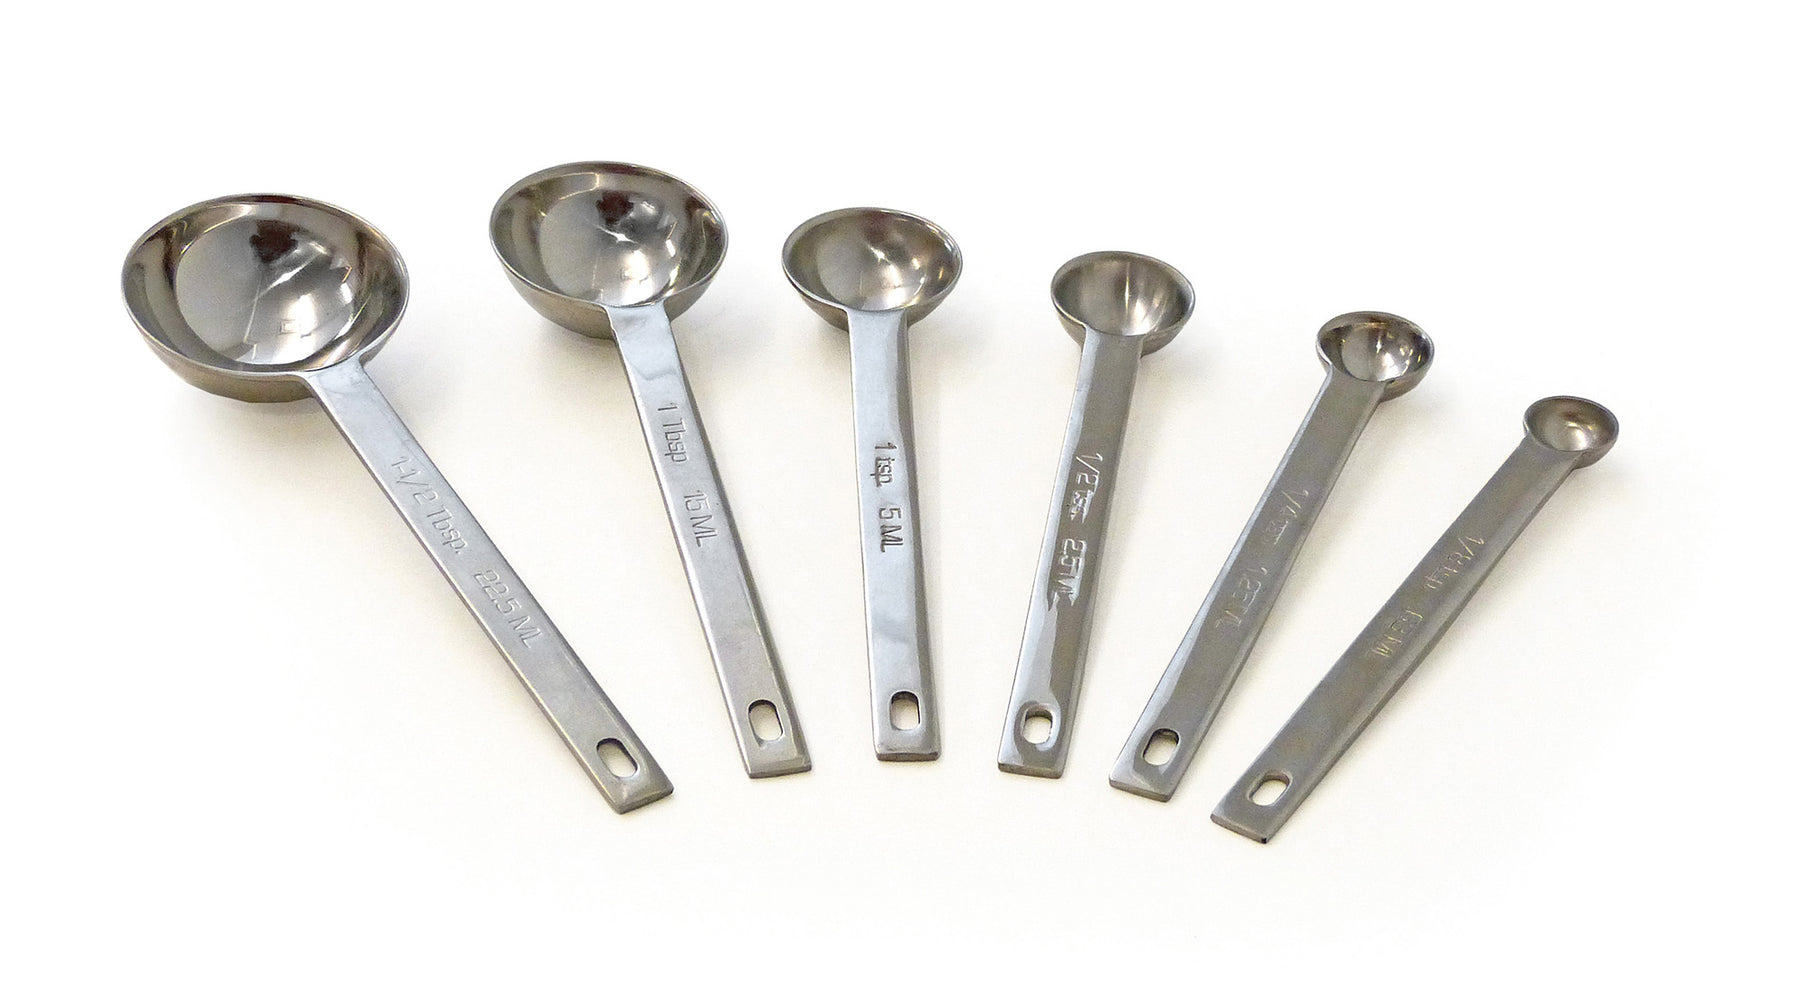 1/8 teaspoon measurer - Whisk